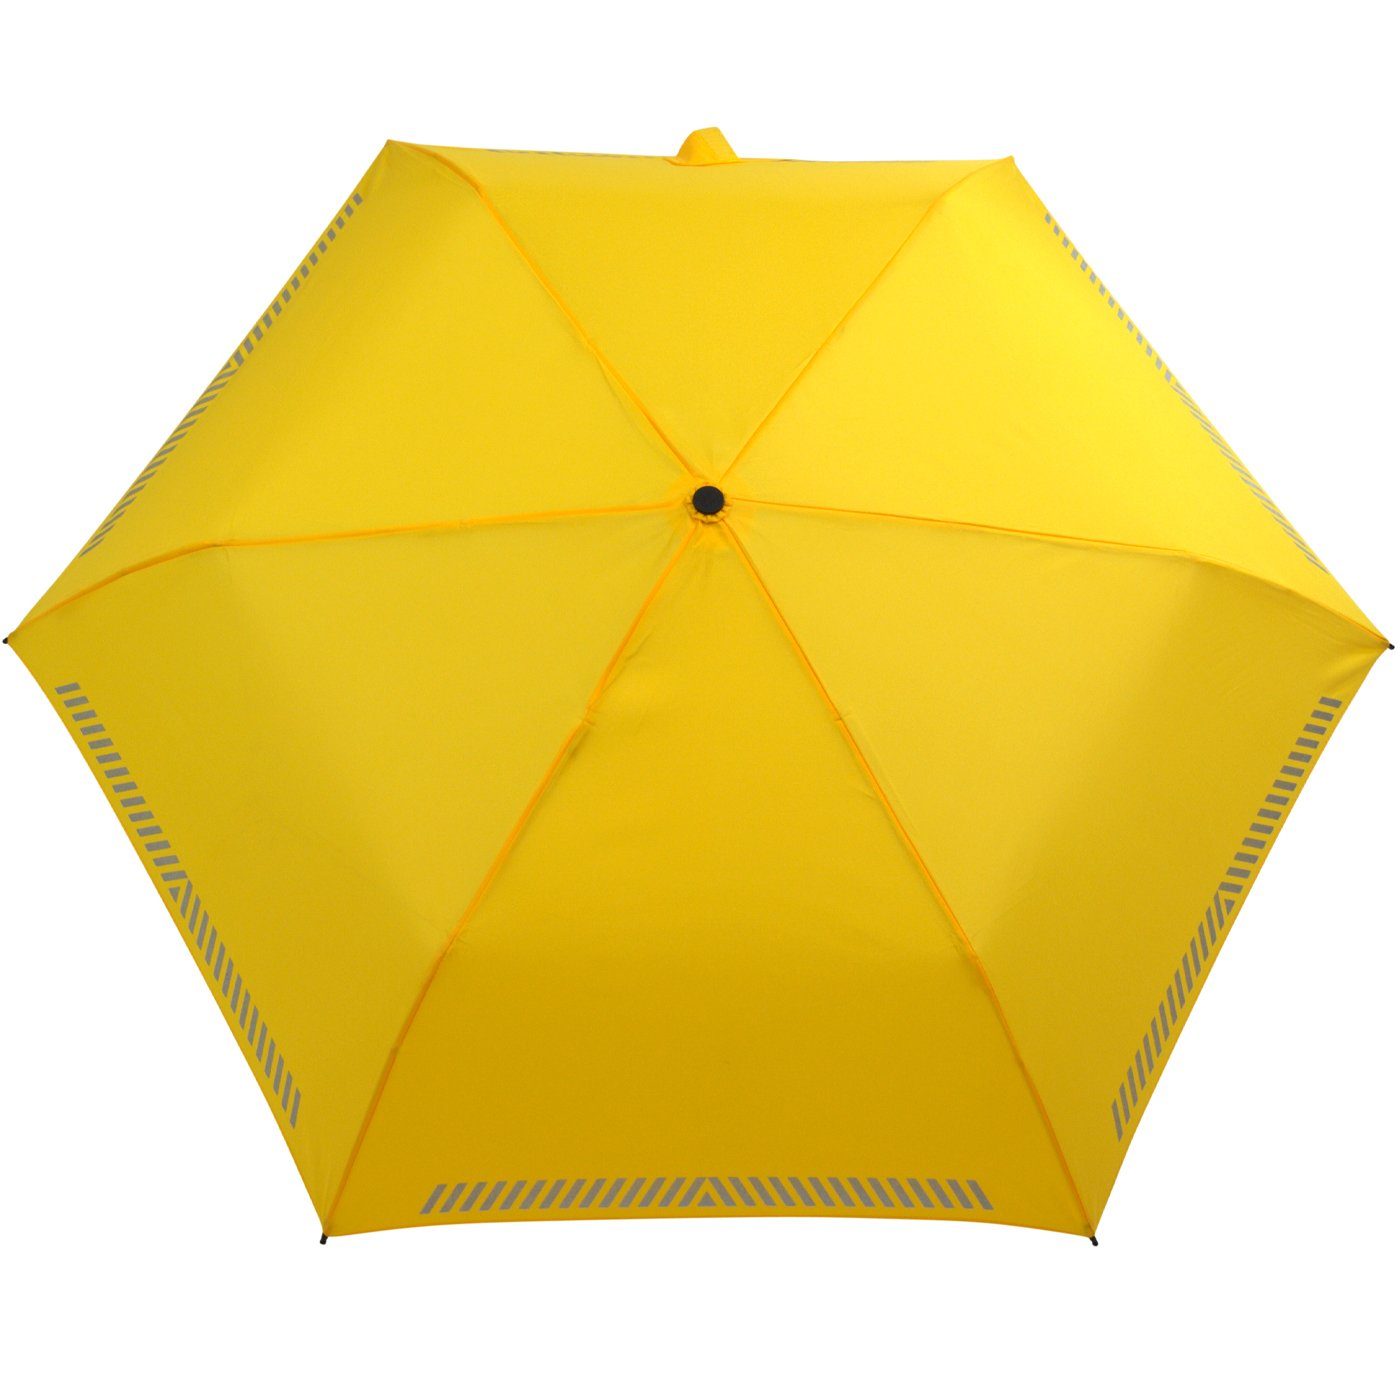 mit iX-brella Kinderschirm gelb Sicherheit Taschenregenschirm - durch Reflex-Streifen reflektierend, Auf-Zu-Automatik,